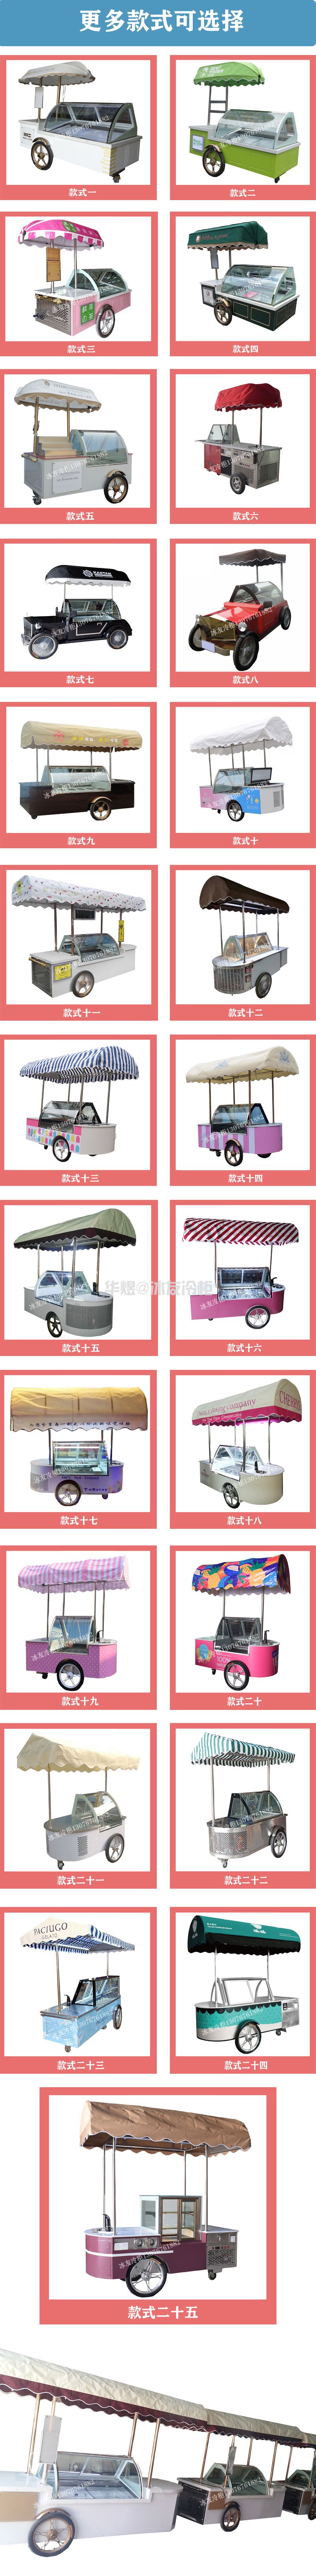 冰友单排6盘冰淇淋车户外冰淇淋展示花车流动雪糕车(图12)